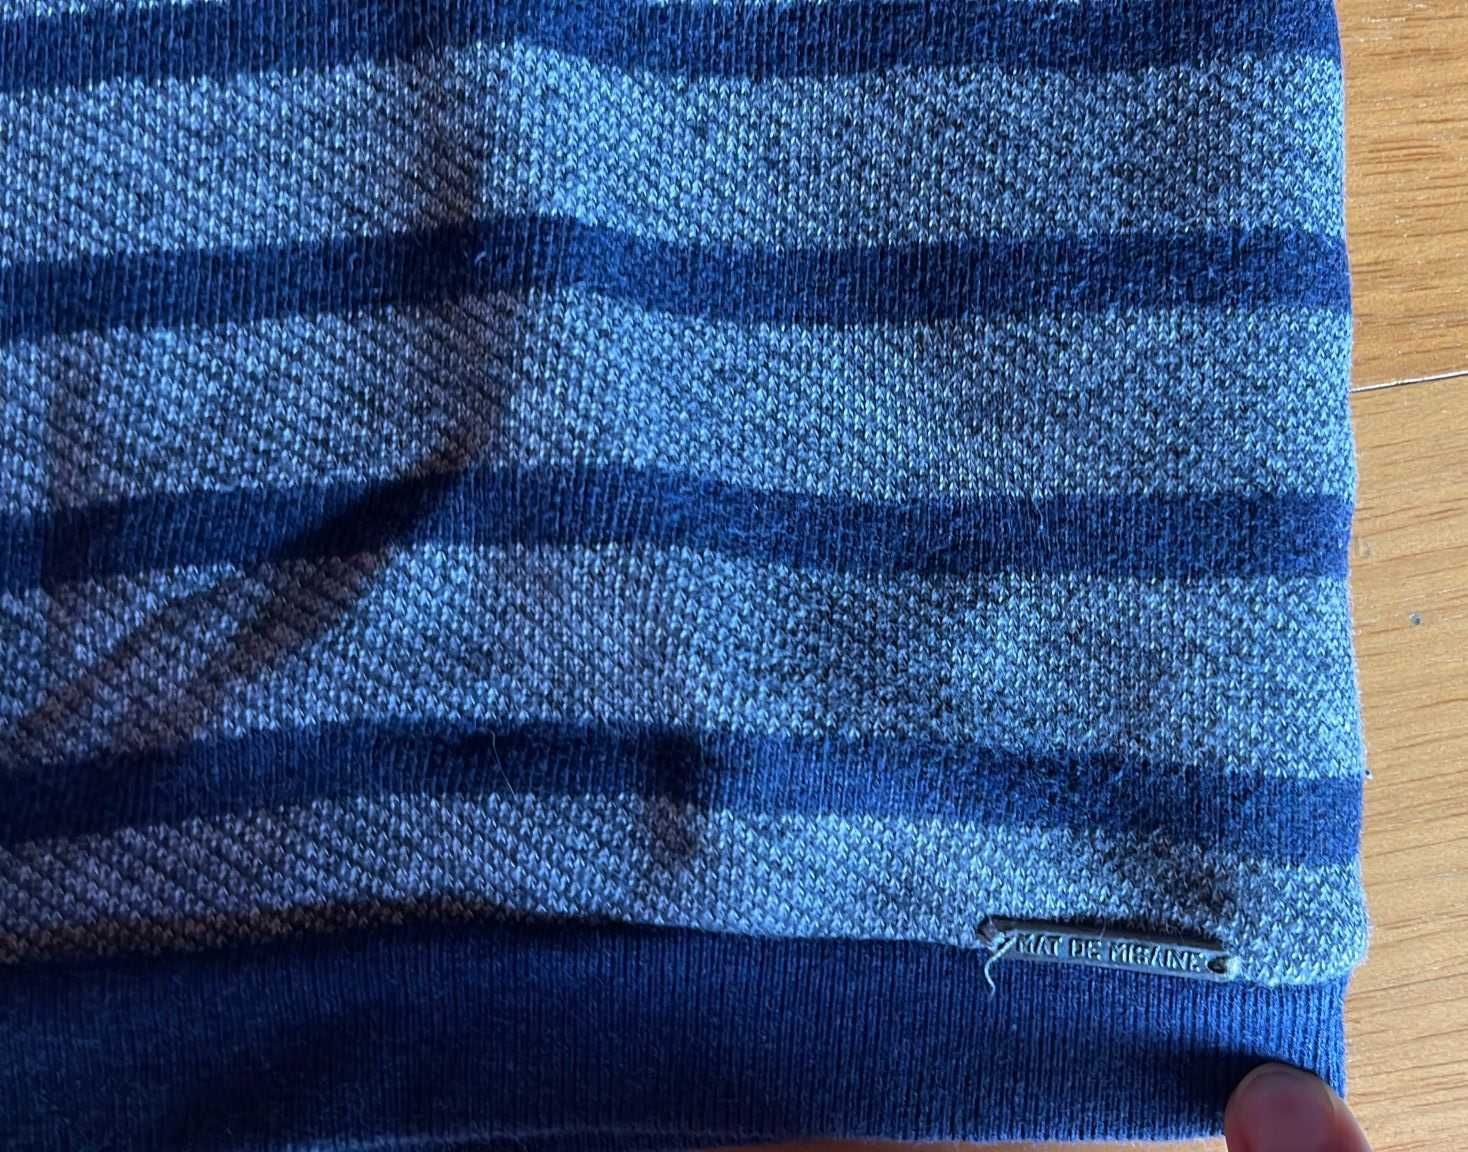 Camisola manga comprida - Senhora - Tamanho S (36) - Azul Marinho